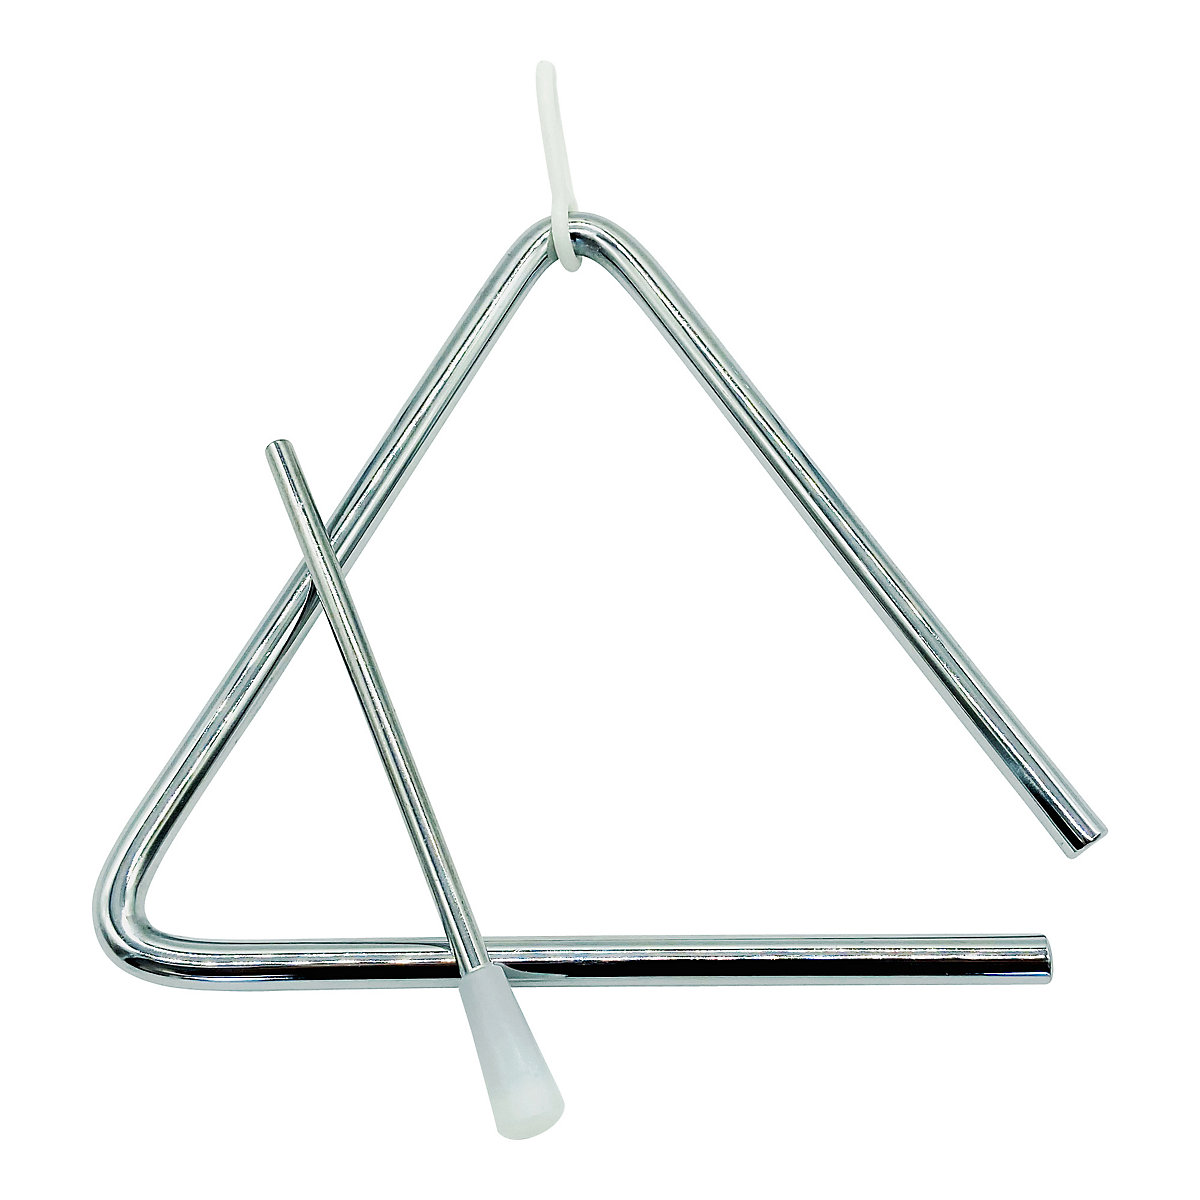 GICO Kinder Triangel aus Metall groß 15 x 15 cm mit Klöppel Schlaginstrument 3870